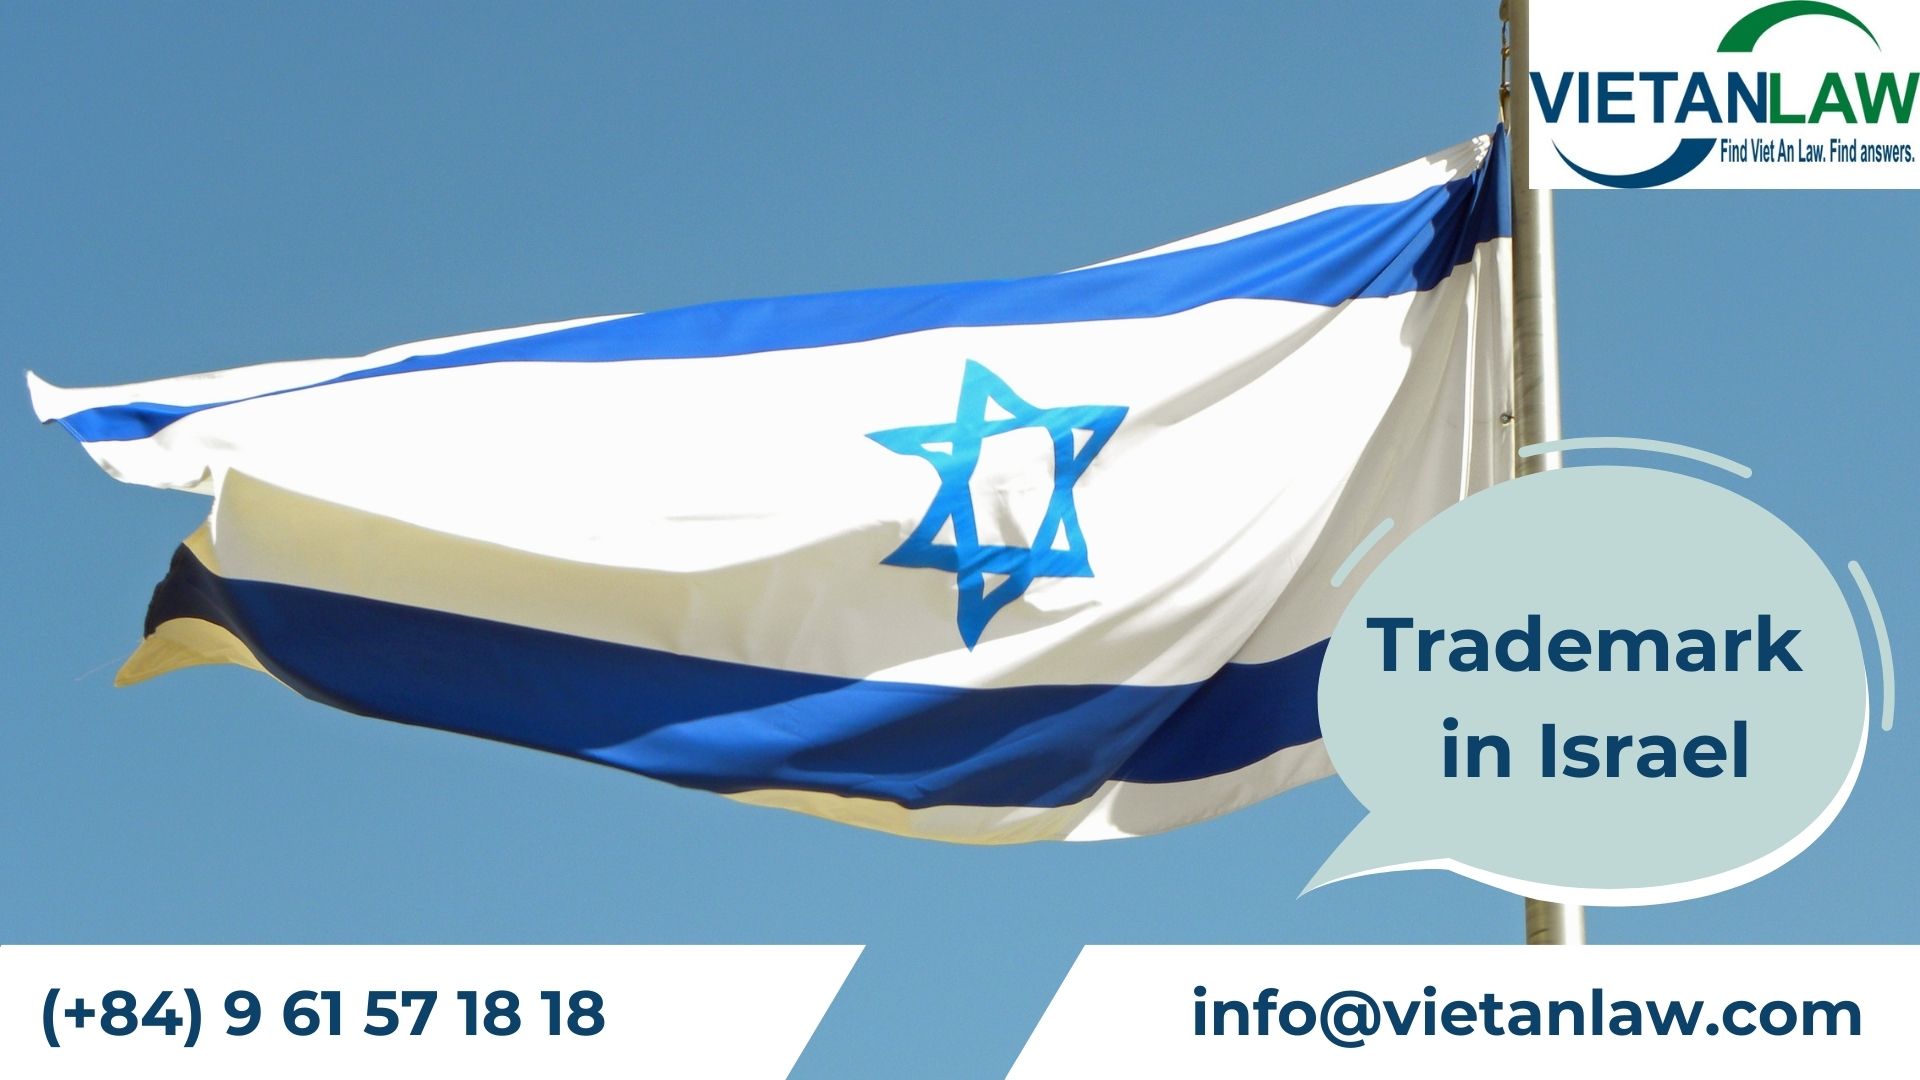 Trademark registration in Israel